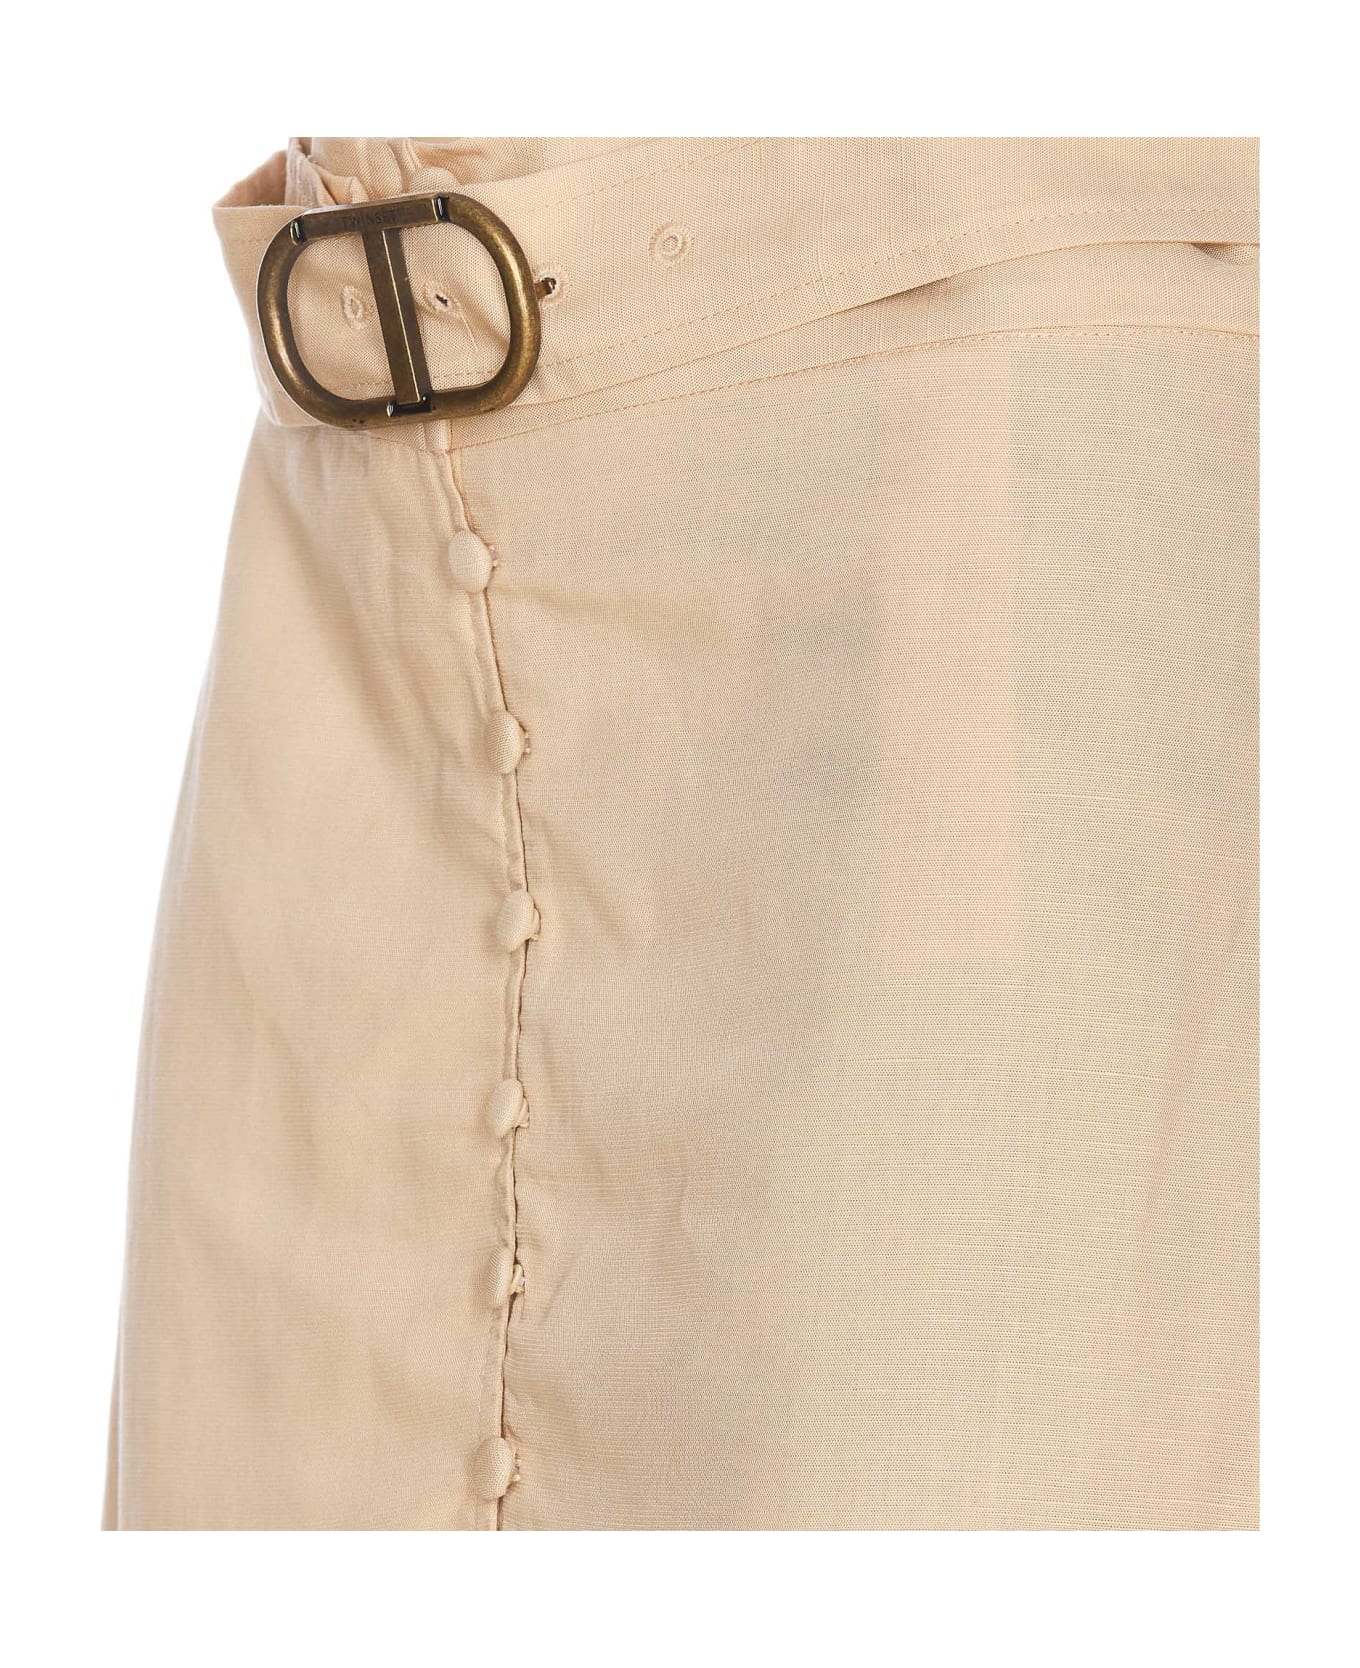 TwinSet Long Skirt - Beige スカート